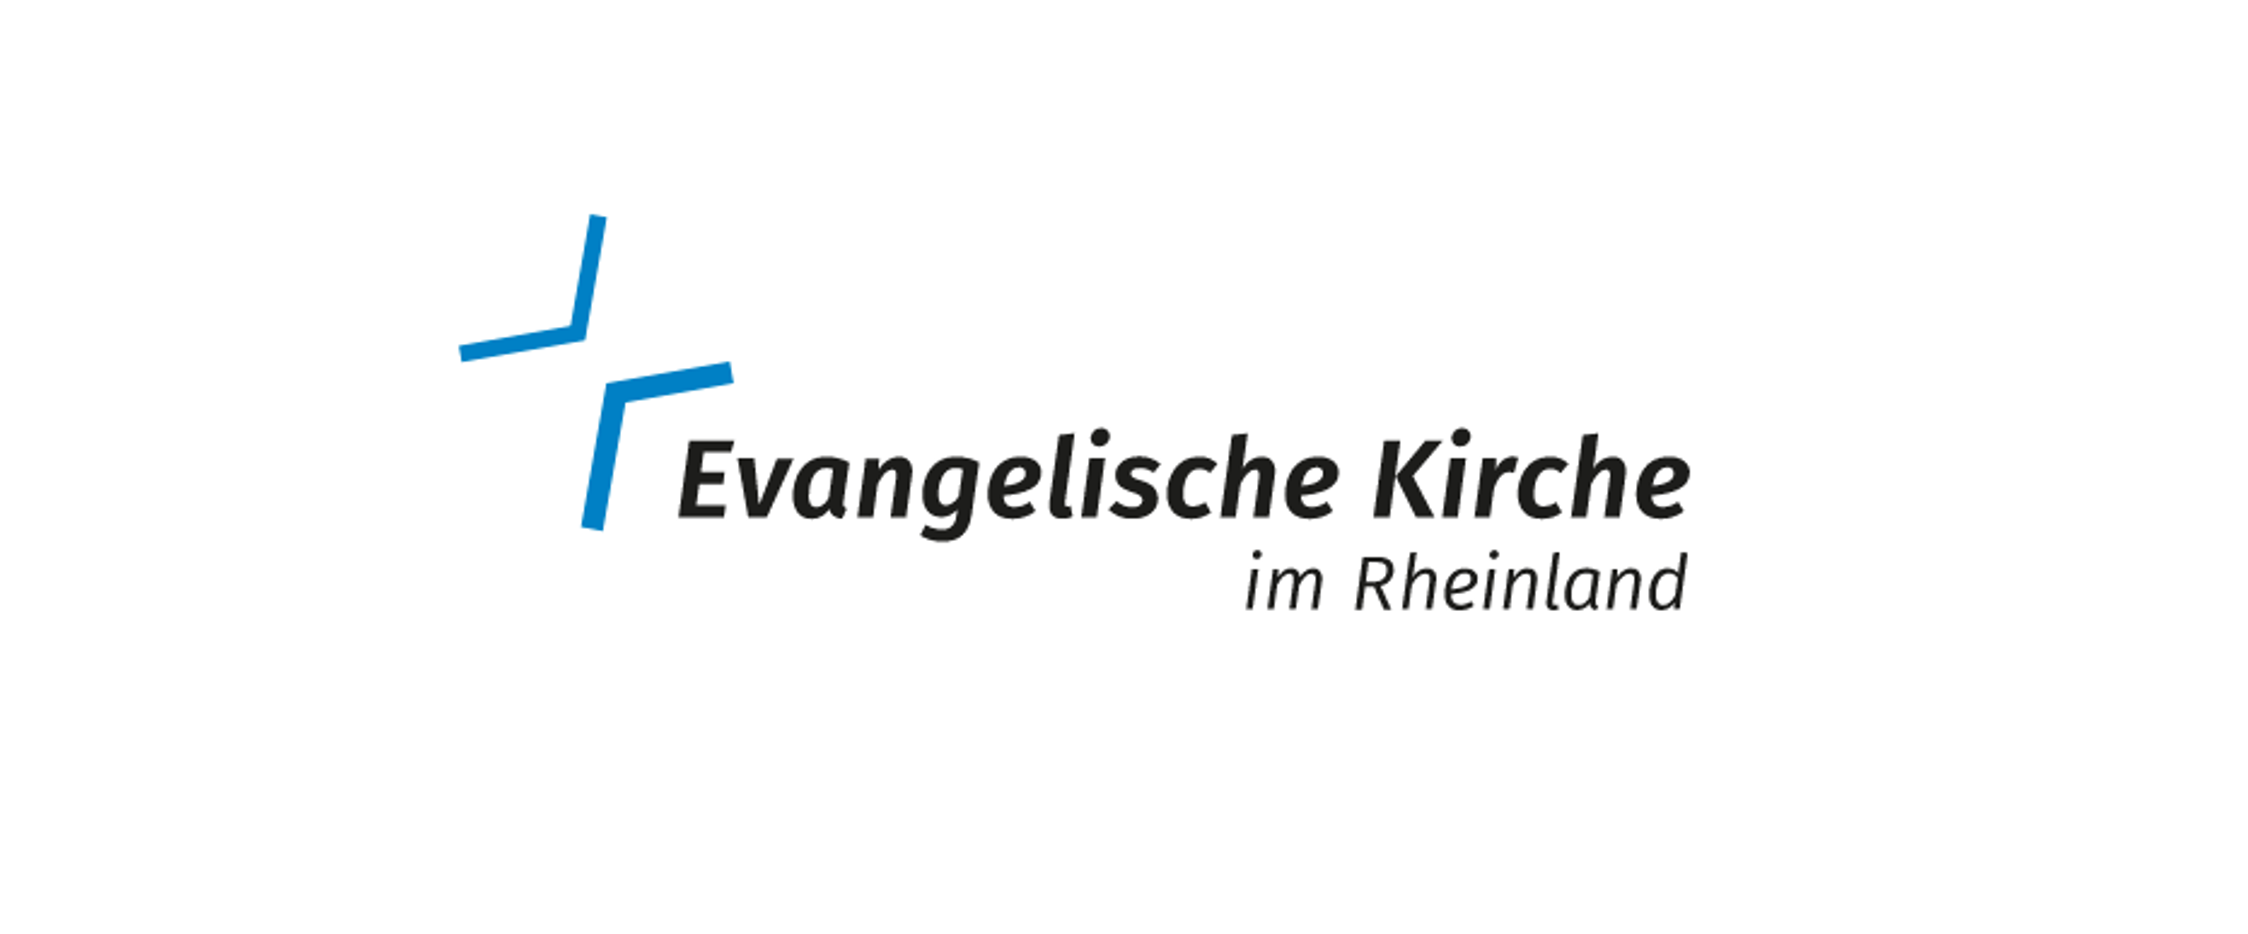 Evangelische Kirche im Rheinland Logo